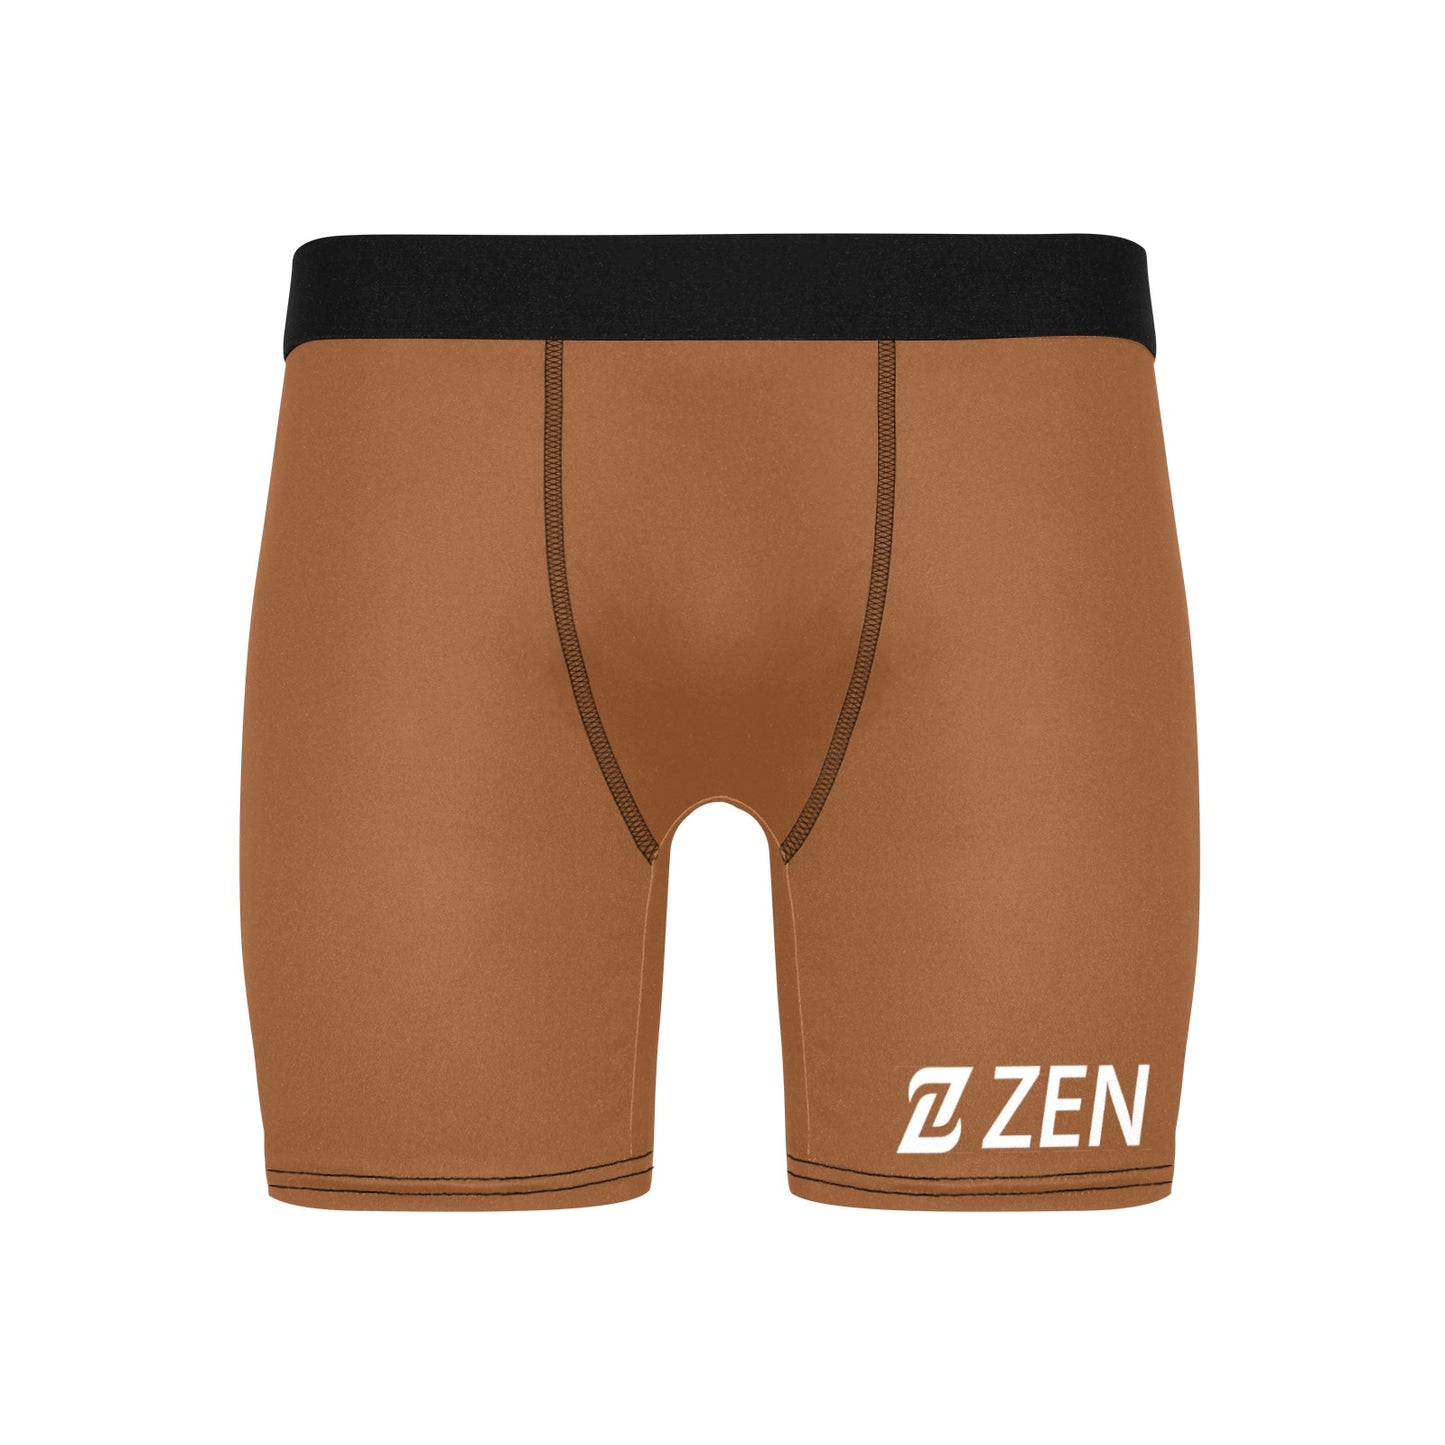 Zen Boxers Long - Nude Med